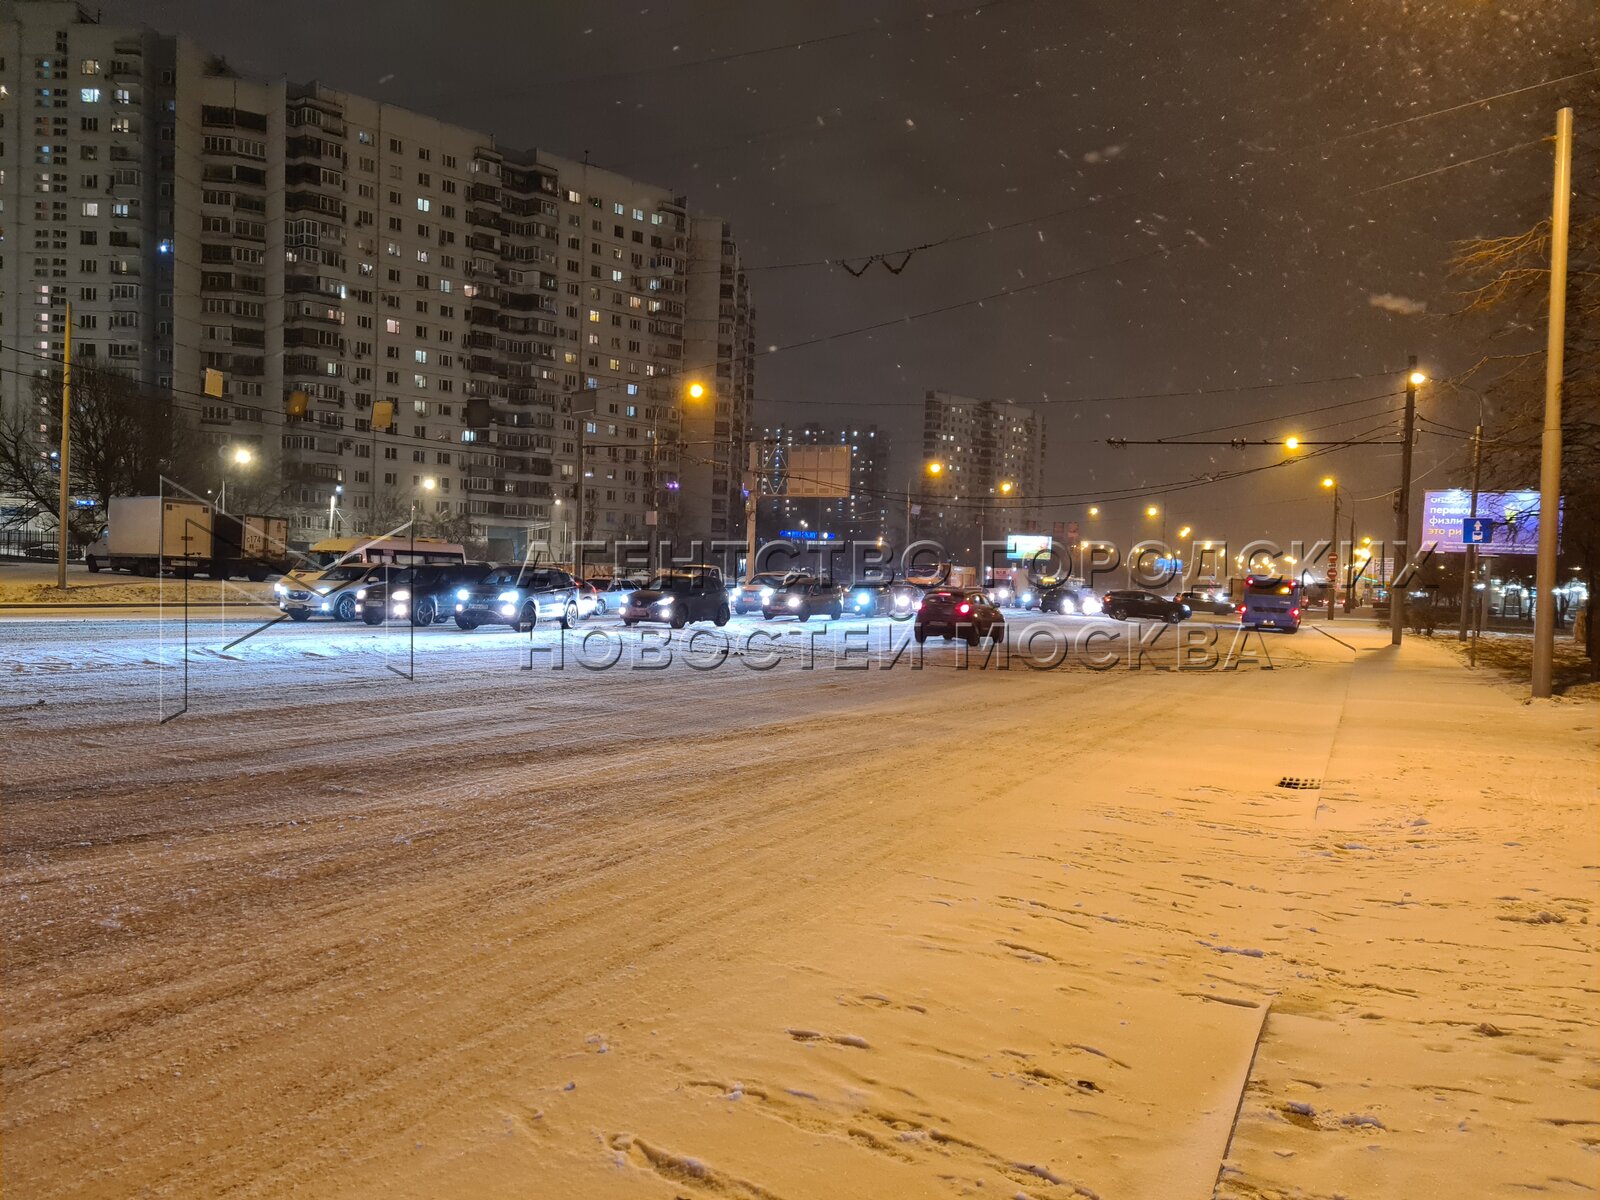 Сегодня снег вечером будет. Снегопад в Москве. Снег в городе. Снегопад Москва вечер. Зимний снегопад в Москве вечером.